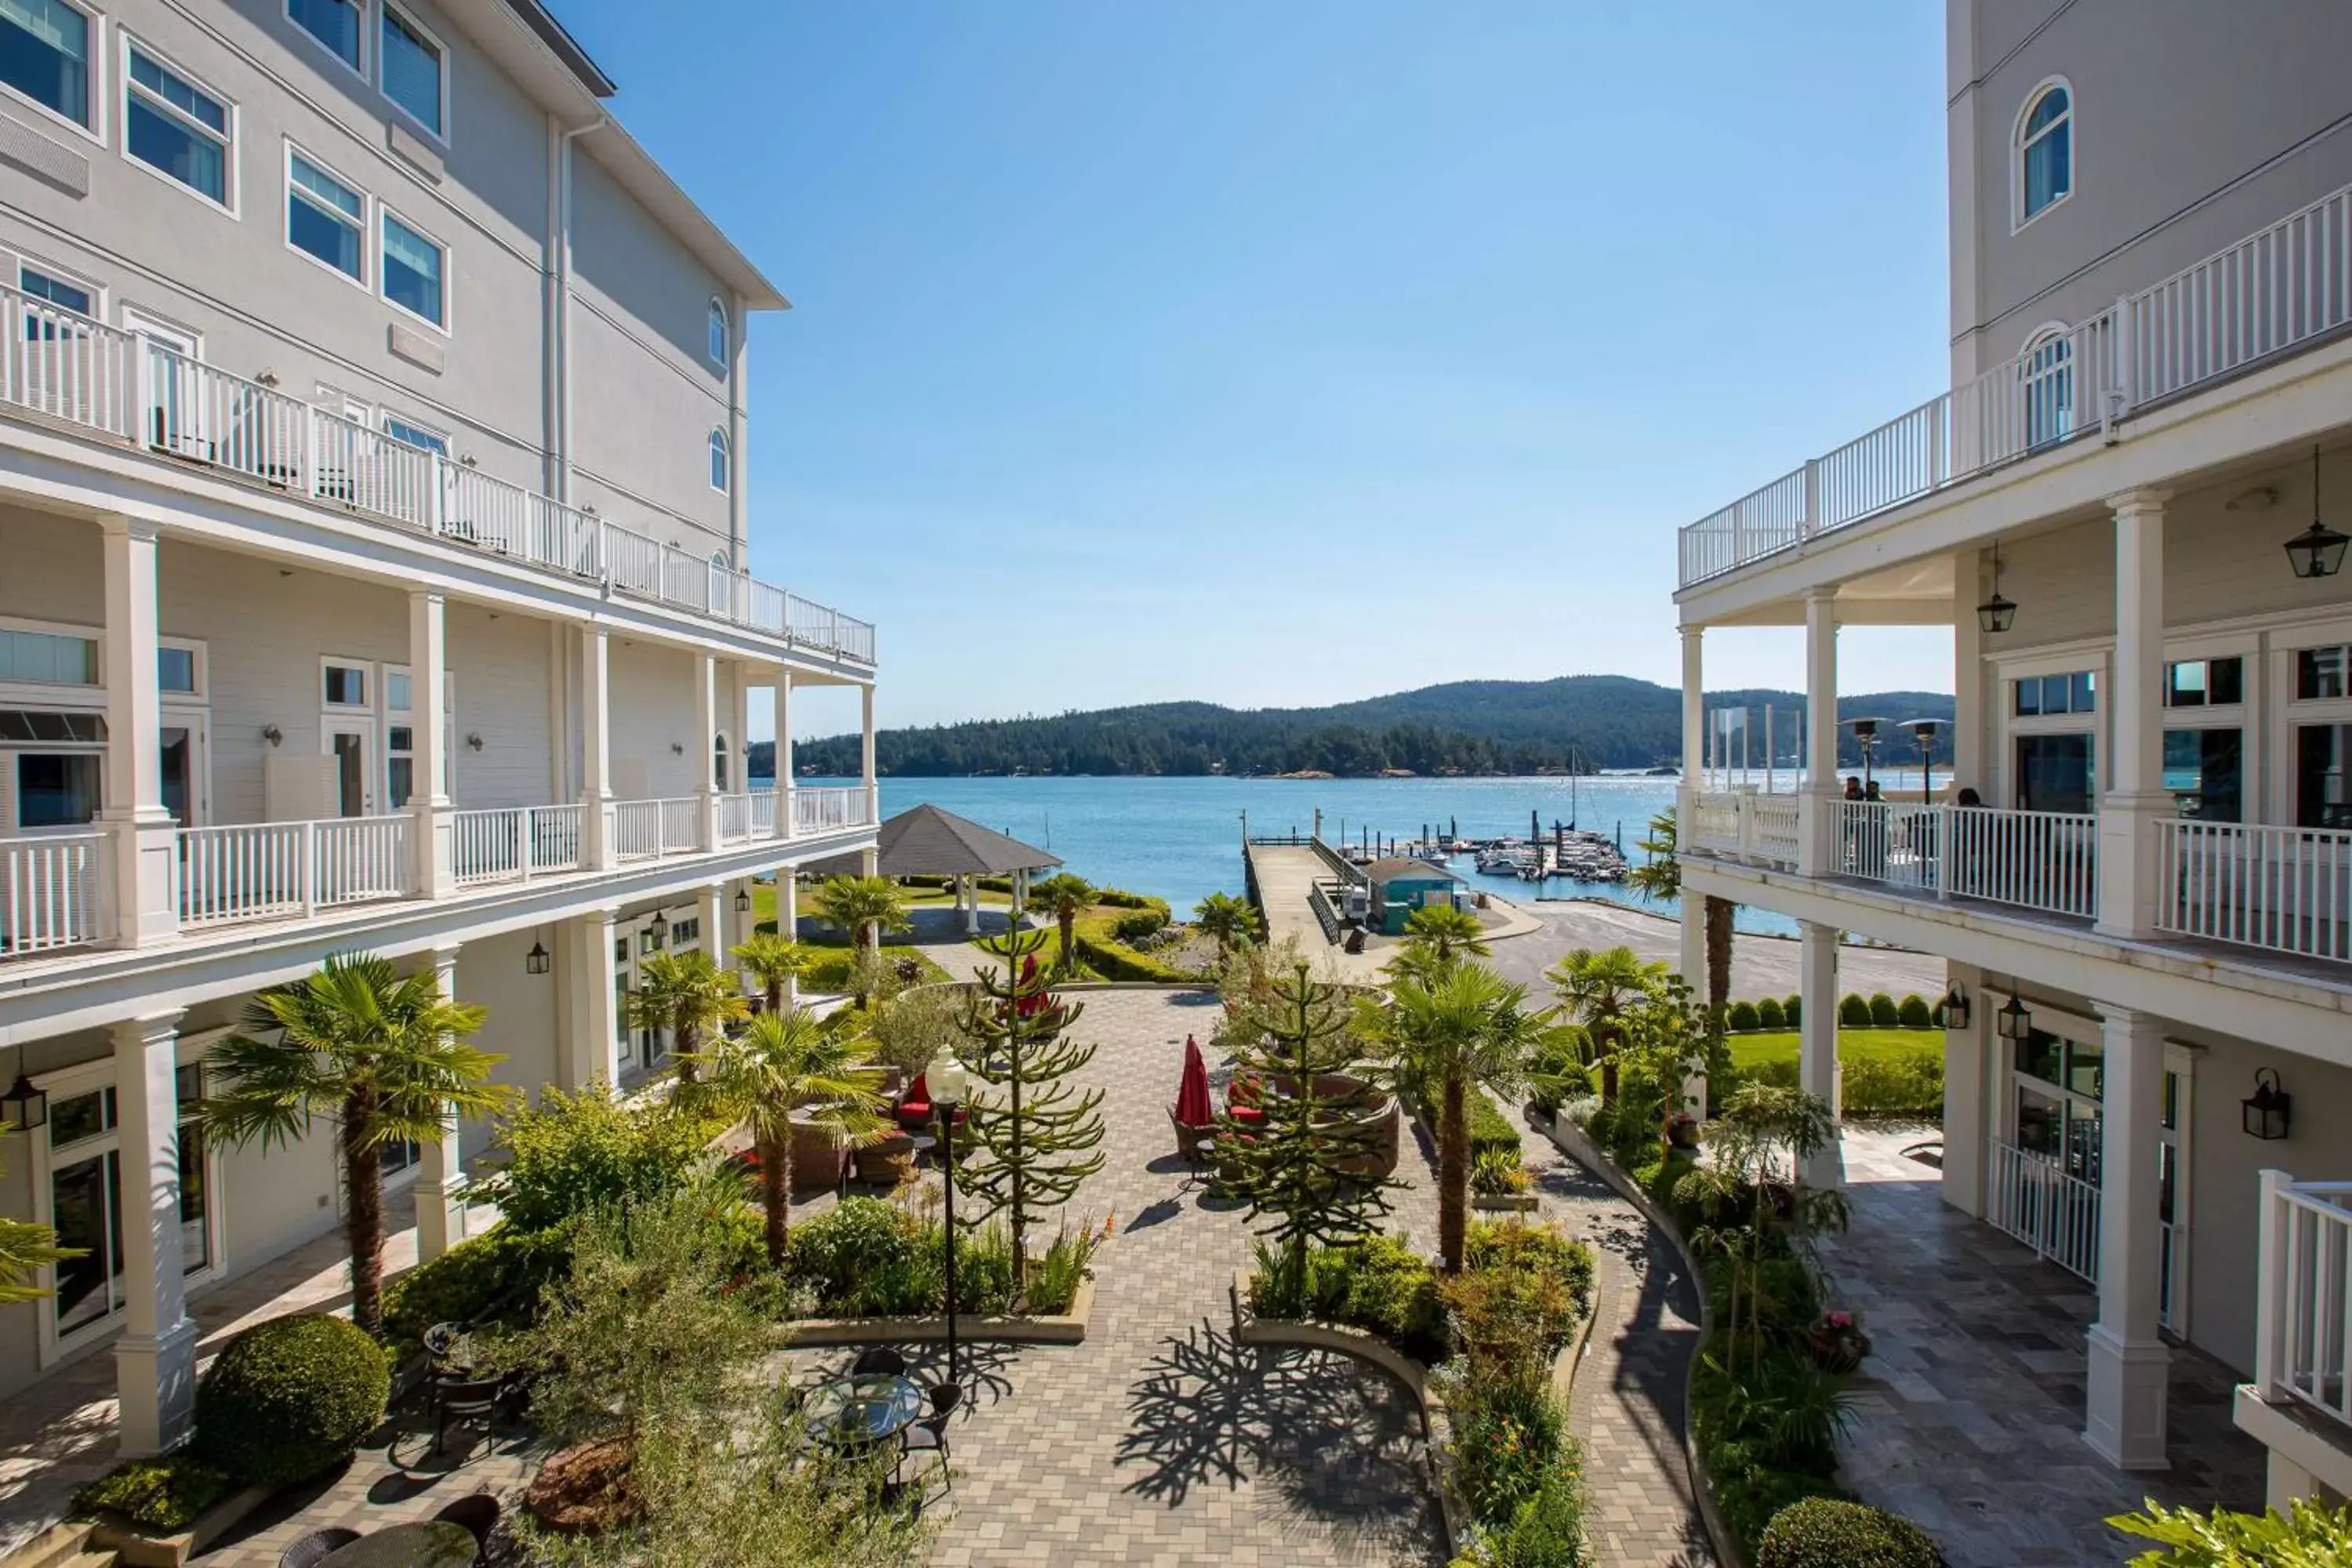 Property building in Prestige Oceanfront Resort, WorldHotels Luxury